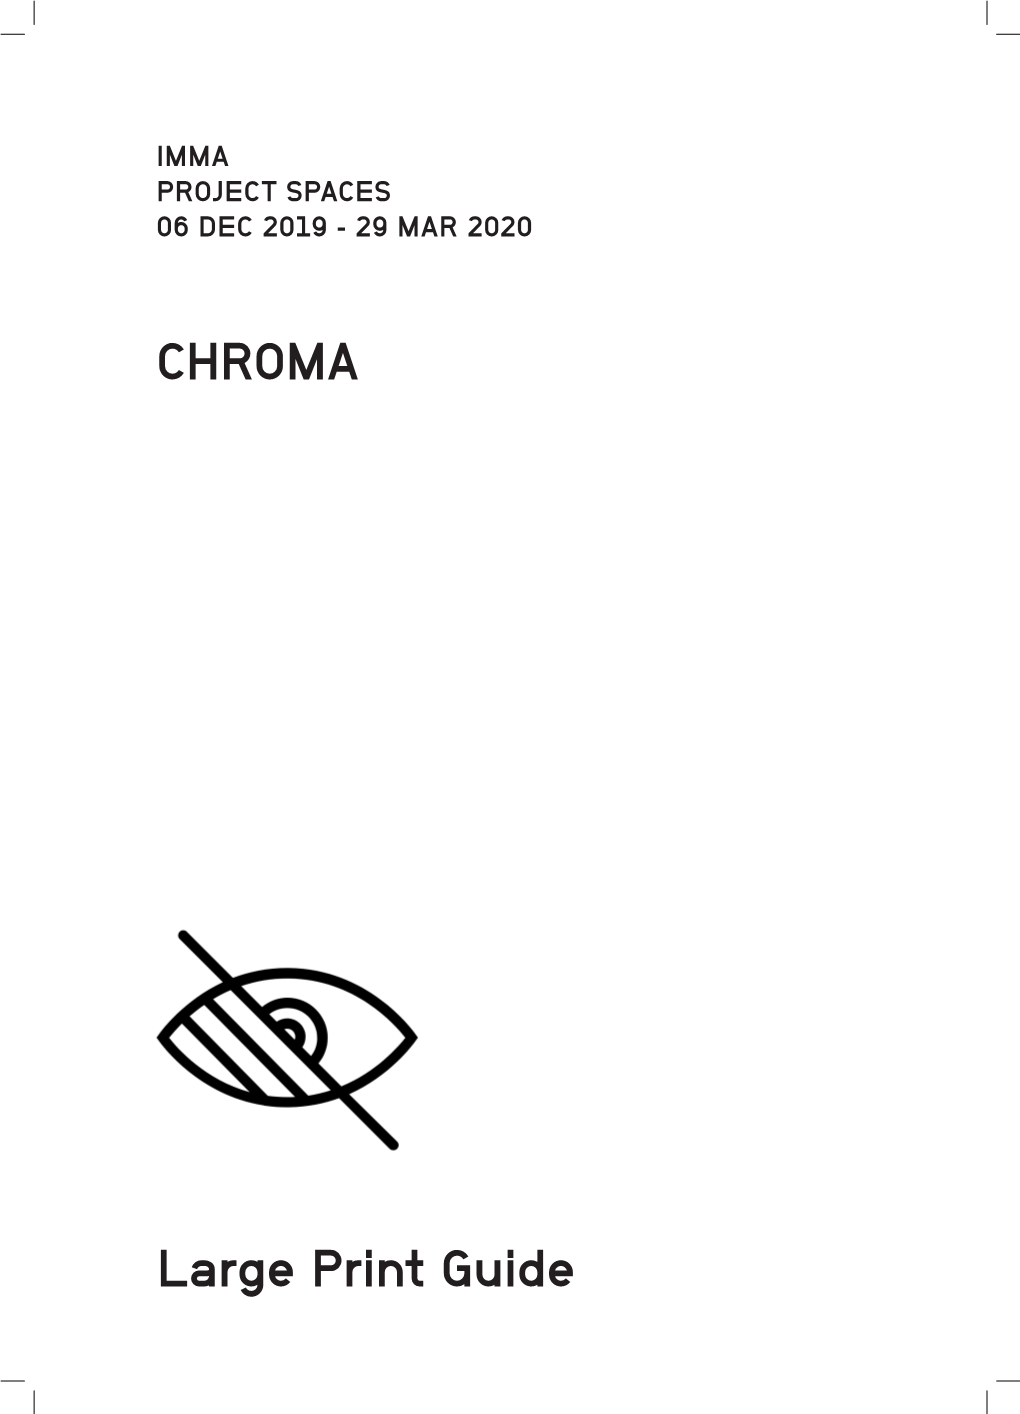 CHROMA. Exhibition Guide. IMMA, Dublin. 2019